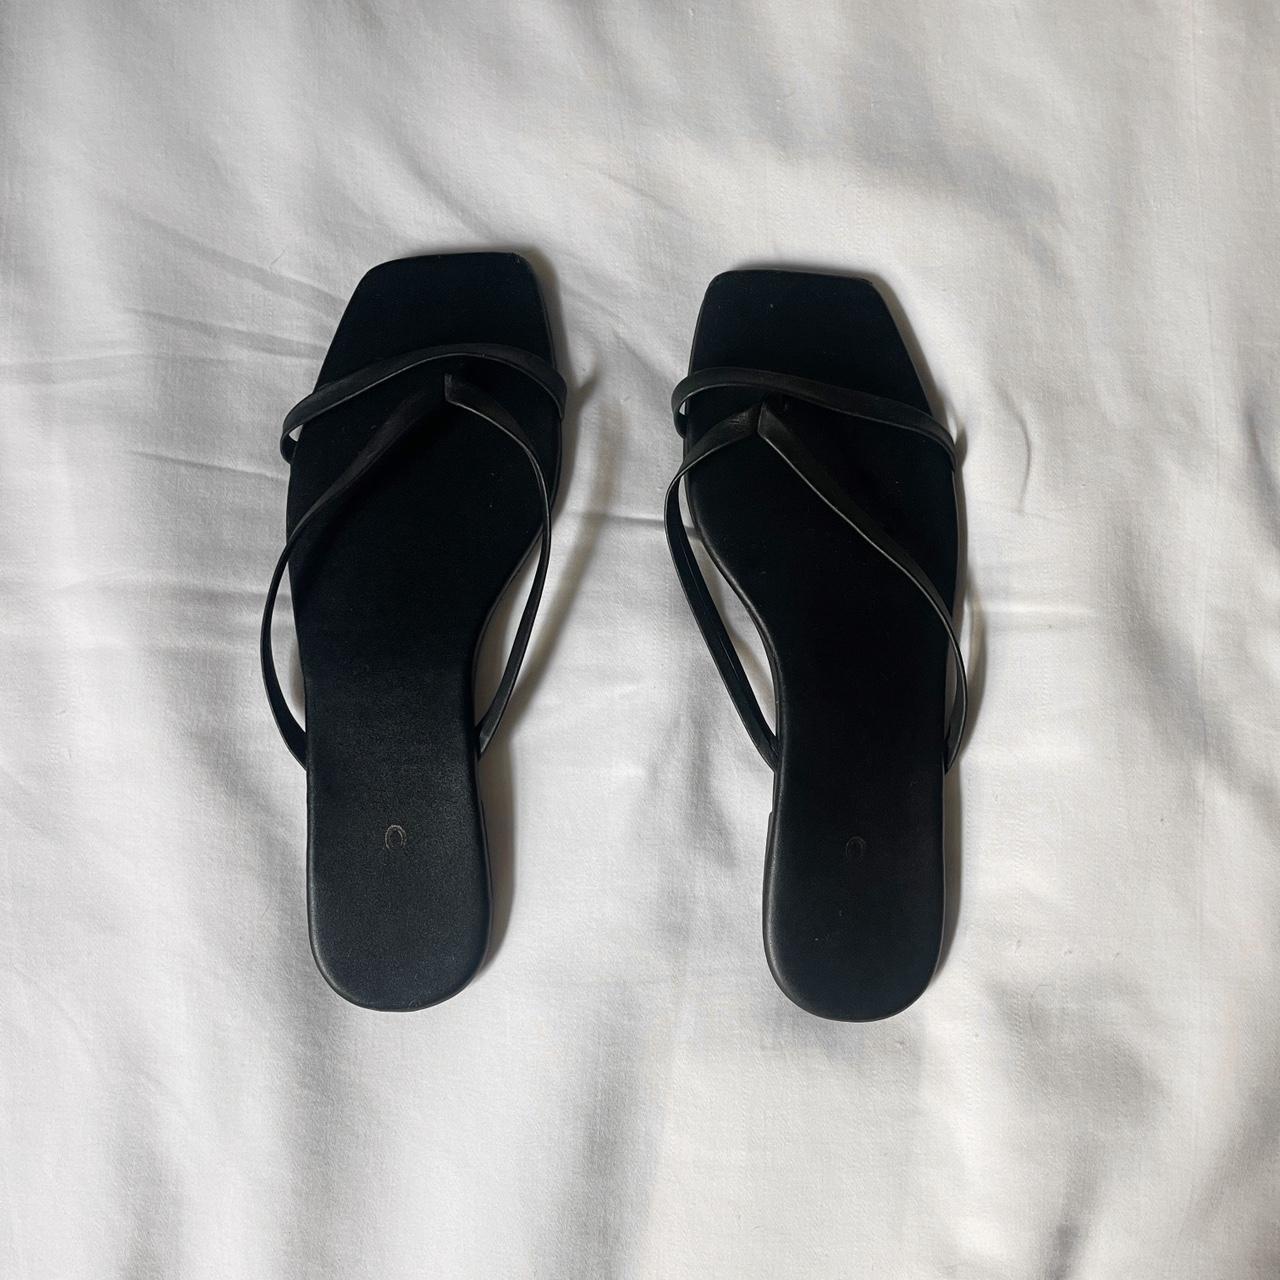 Aldo flat sandals Size 8 Worn - good condition - Depop